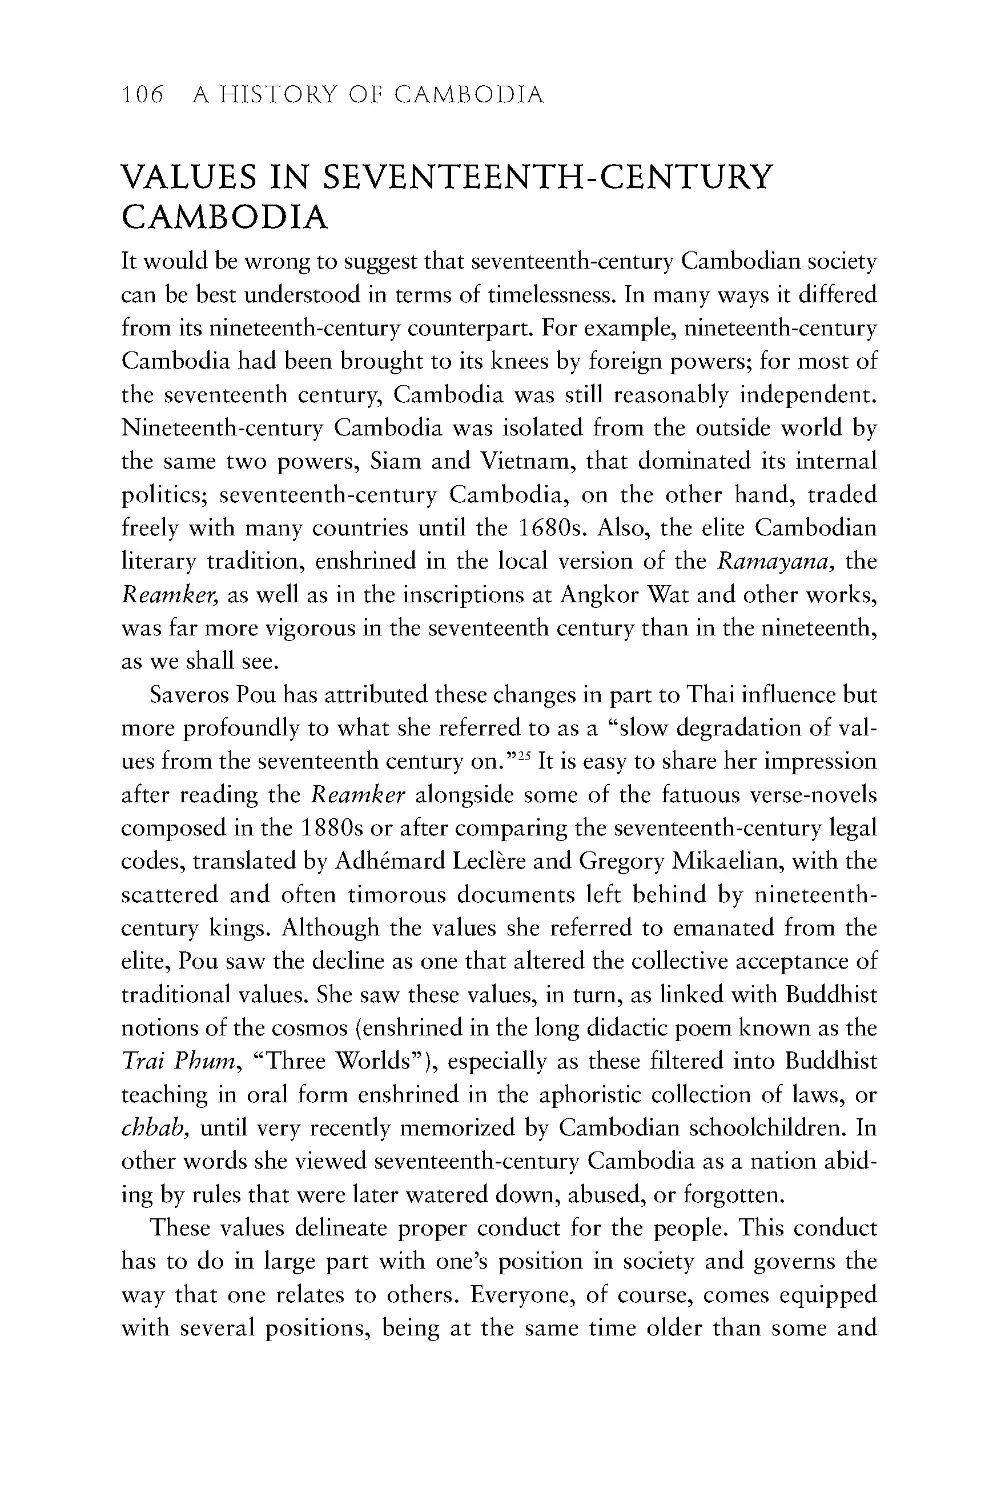 Values in Seventeenth Century Cambodia